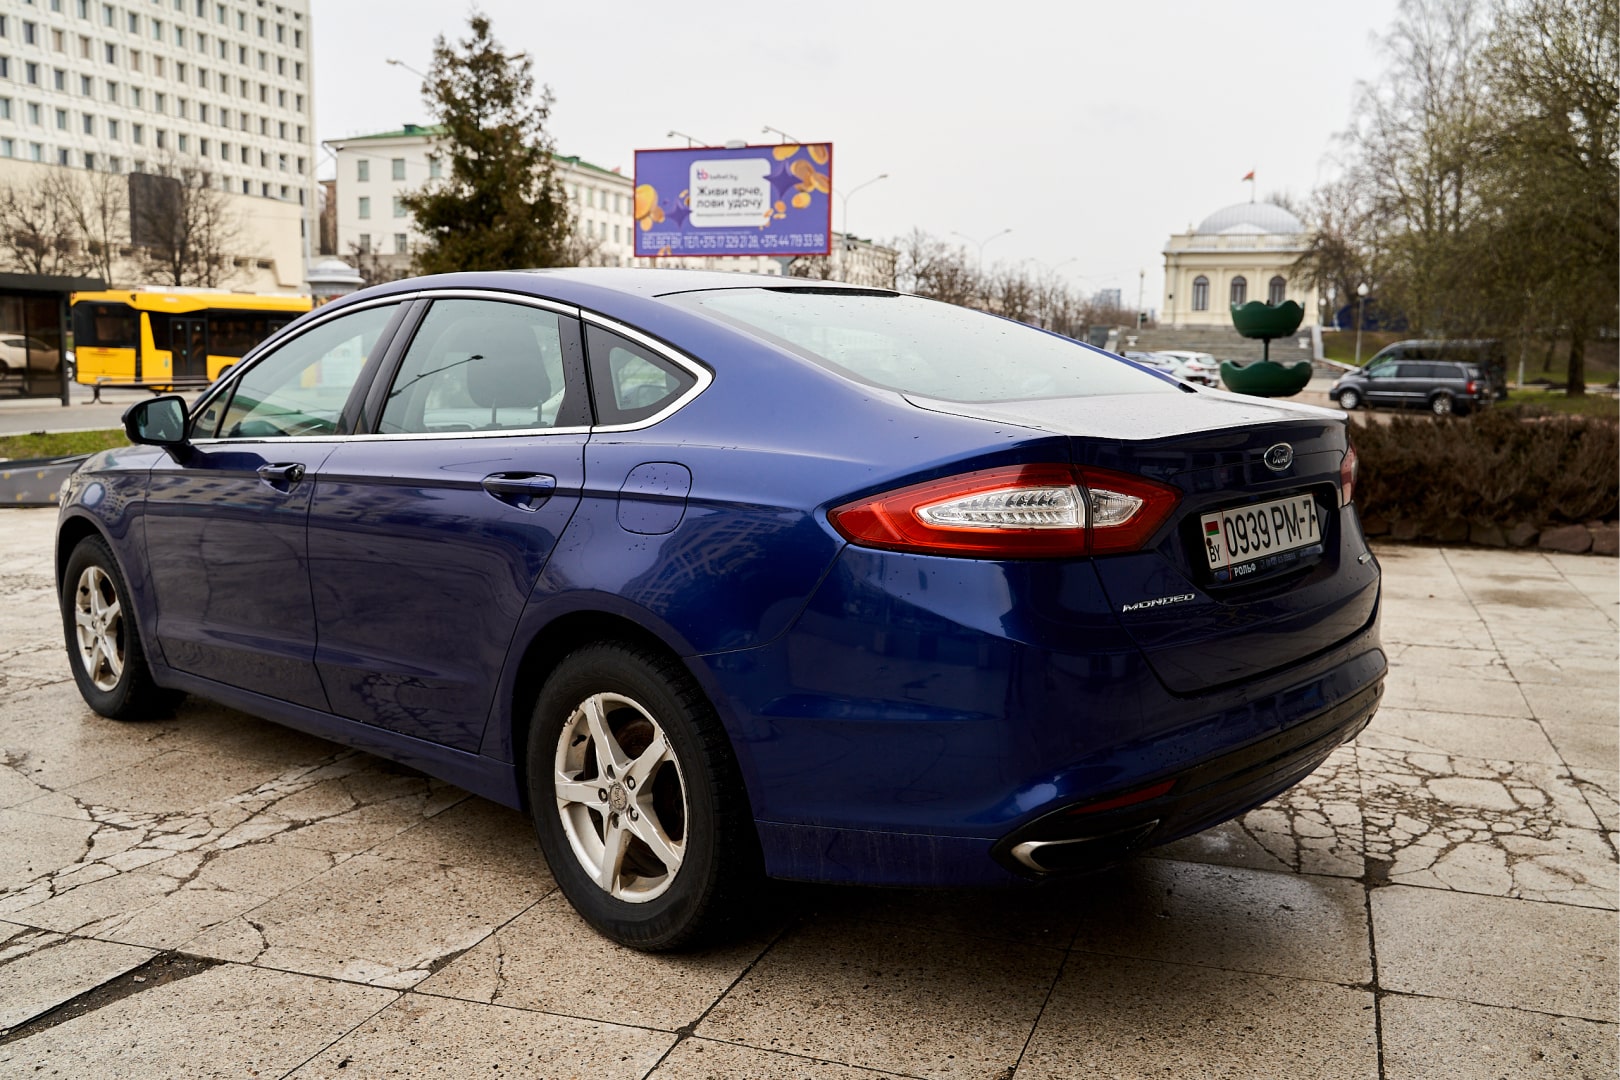 Аренда  Ford Mondeo Titanium Blue  2 класса 2017 года в городе Минск от 49 $/сутки,  двигатель: Бензин , объем 2.0 литров, КАСКО (Мультидрайв), без водителя, вид 4 - West Group